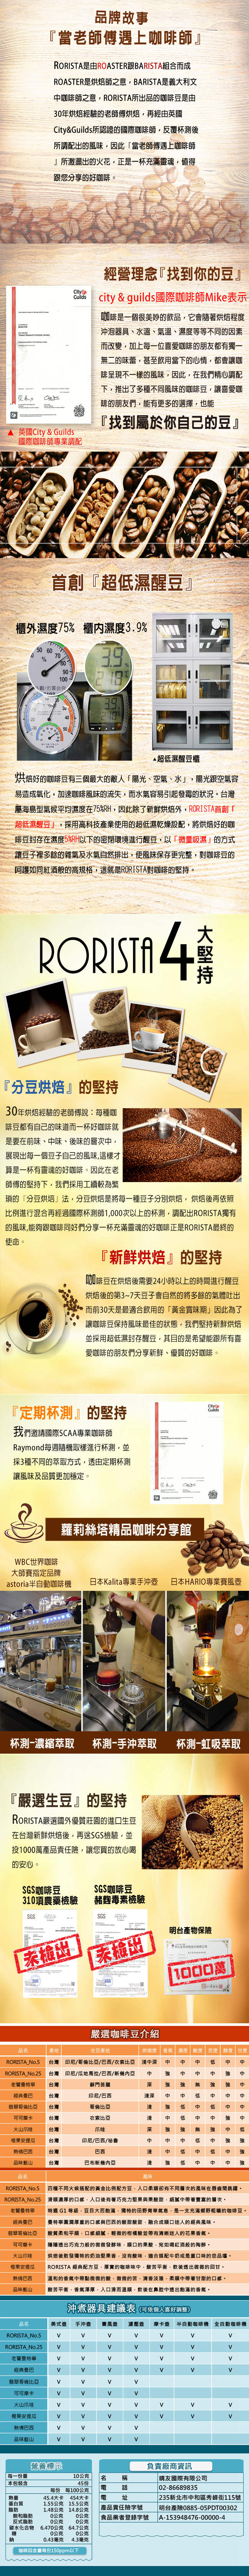 【RORISTA】NO.25_嚴選咖啡豆(450g/包)